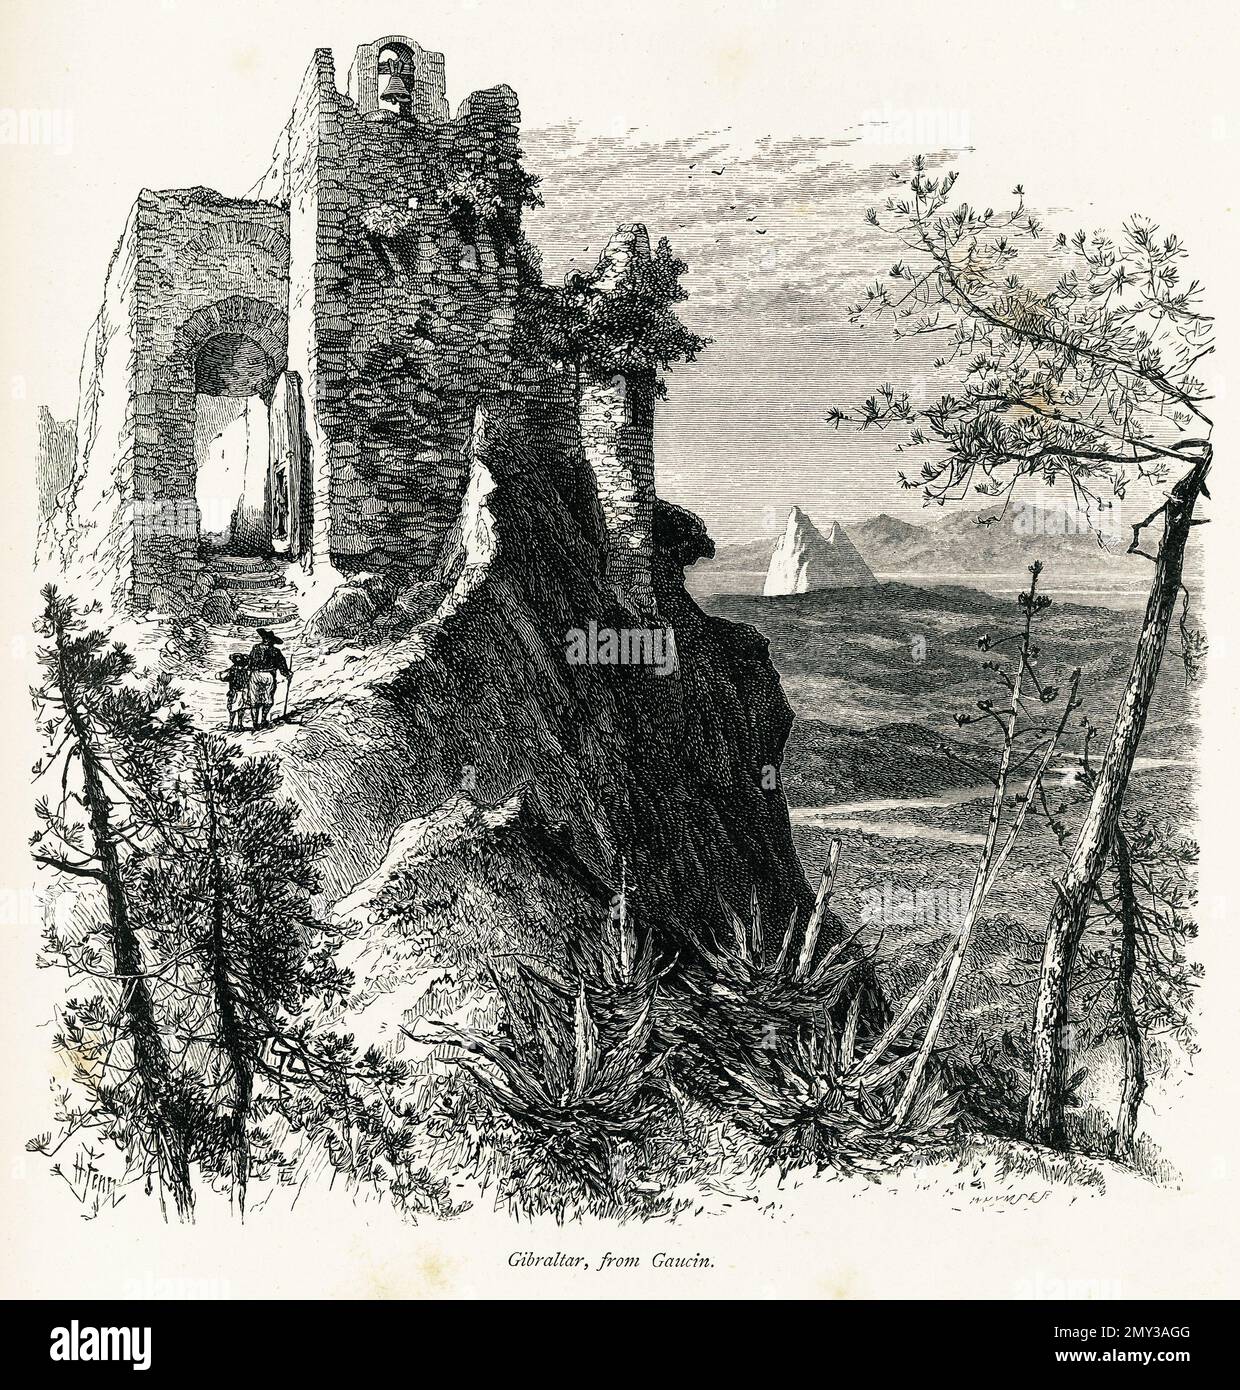 Antica incisione di Gibilterra e il suo famoso punto di riferimento la Rocca di Gibilterra visto da Gaucin, Spagna. Illustrazione pubblicata nella pittoresca Europa, Foto Stock